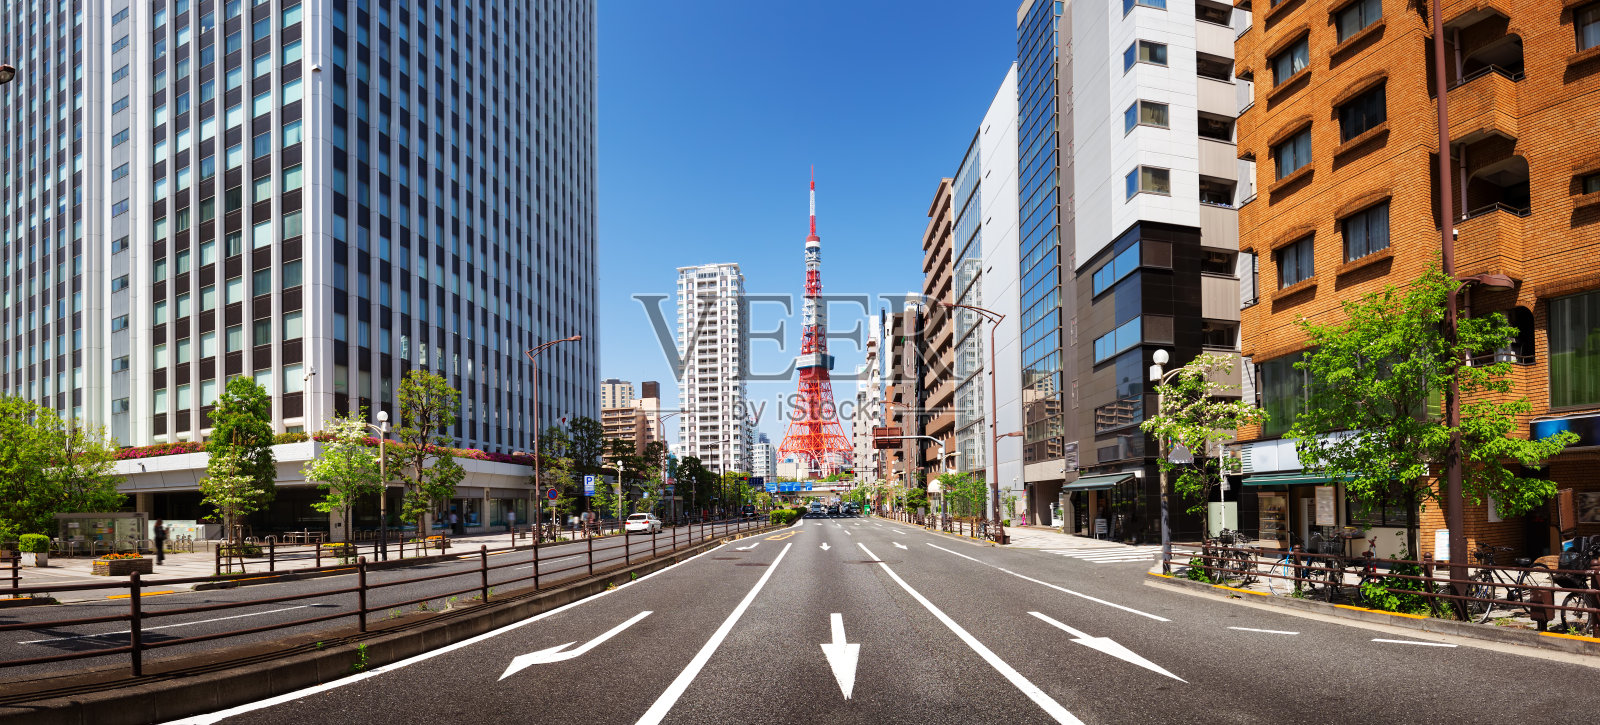 日本东京塔的全景照片摄影图片